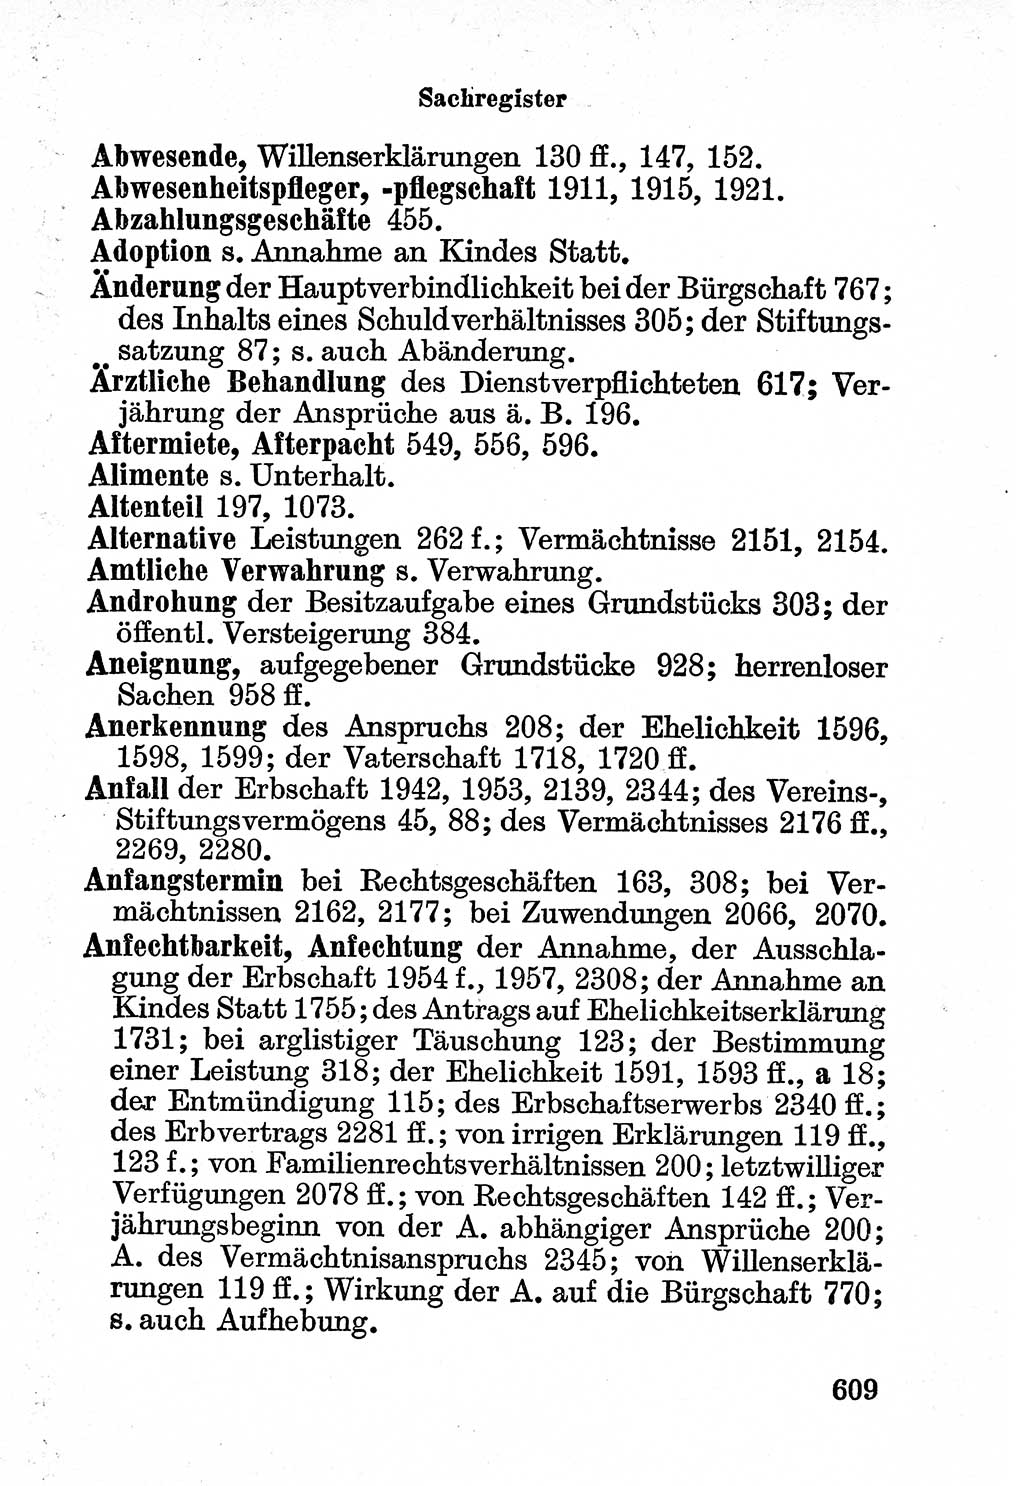 Bürgerliches Gesetzbuch (BGB) nebst wichtigen Nebengesetzen [Deutsche Demokratische Republik (DDR)] 1956, Seite 609 (BGB Nebenges. DDR 1956, S. 609)